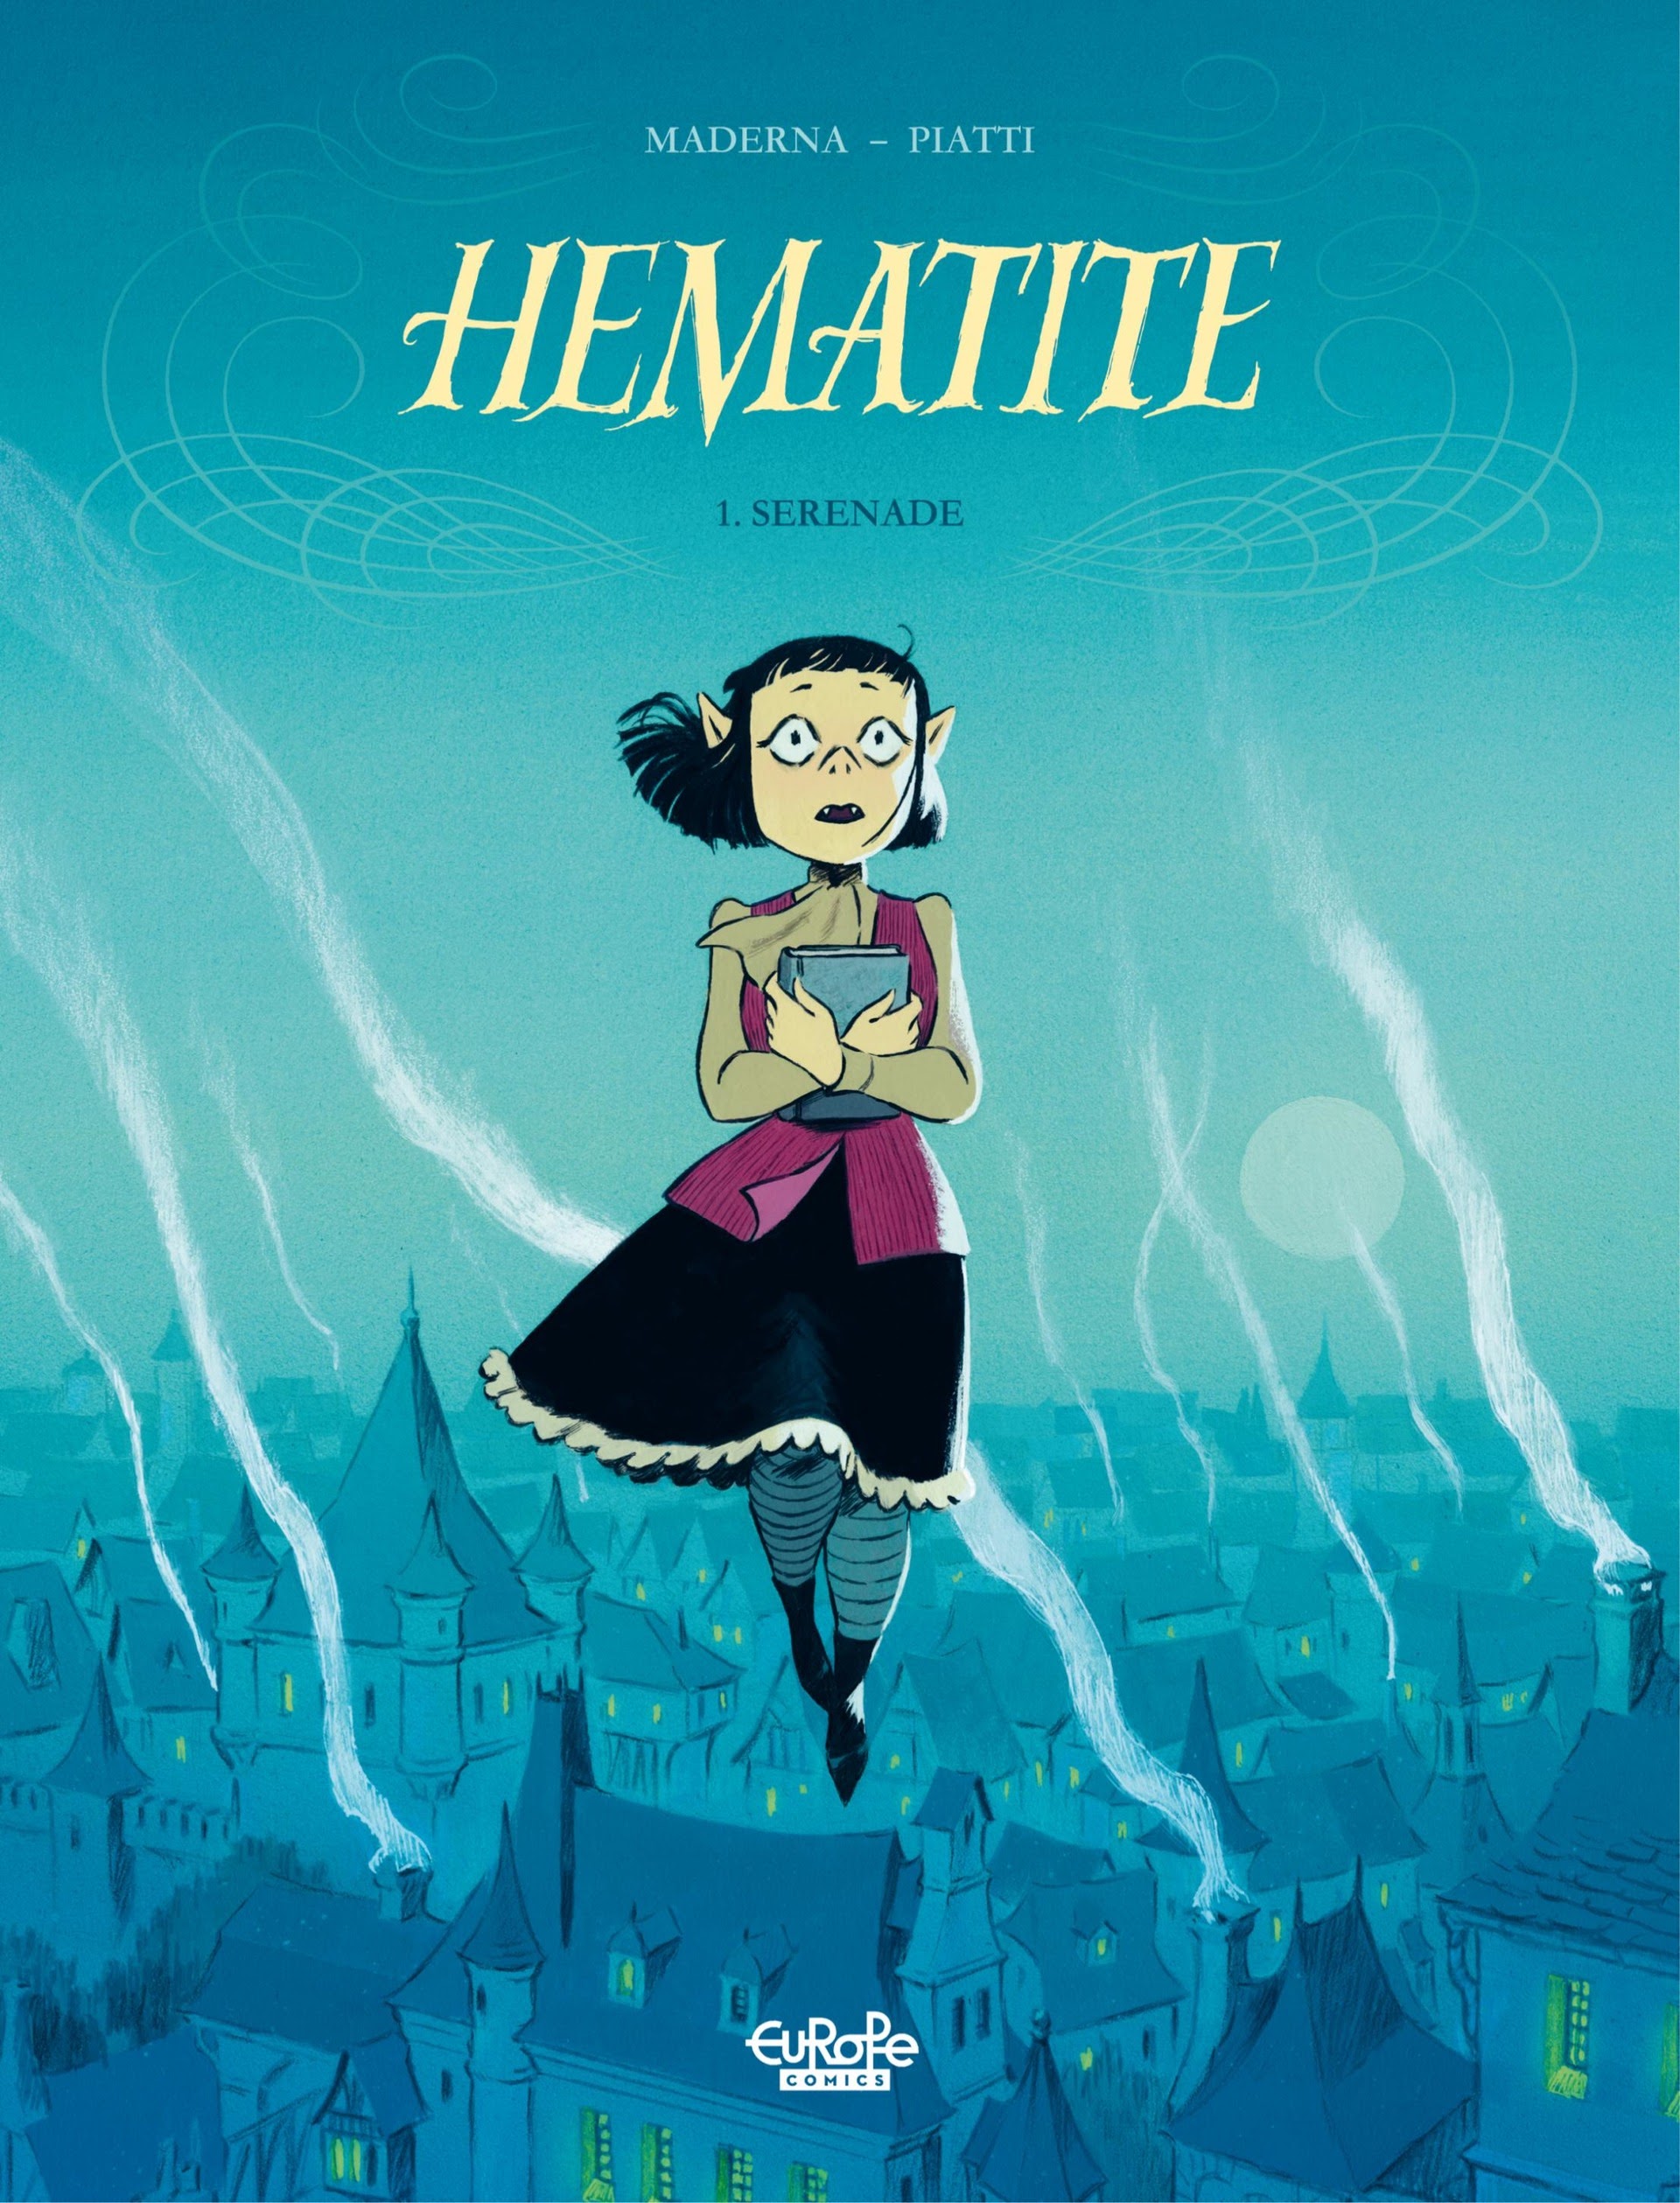 Read online Hematite: Serenade comic -  Issue # Full - 1